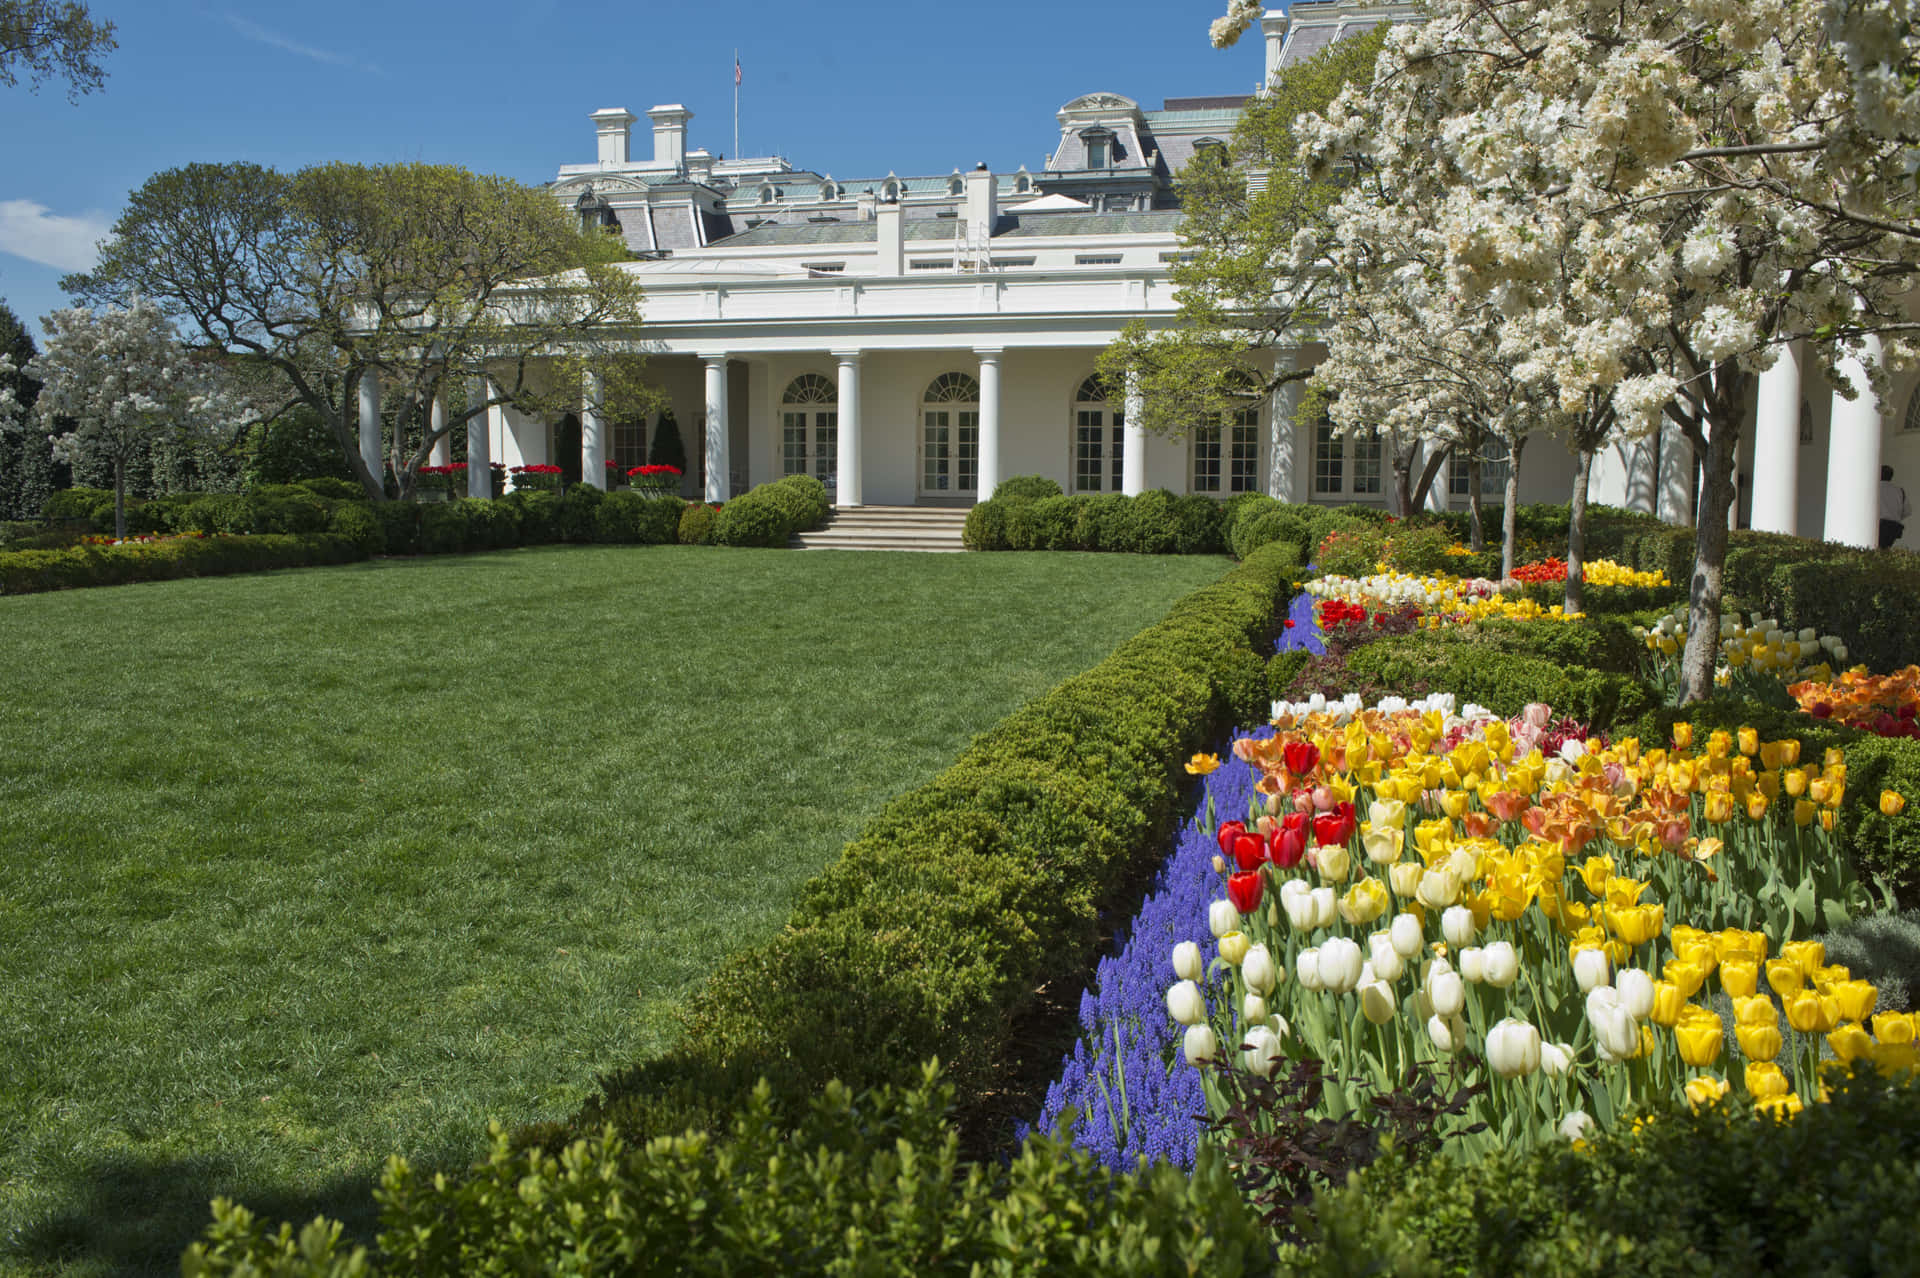 Ilgiardino Delle Rose Della Casa Bianca, Un Simbolo Di Apprezzamento Nazionale Per La Bellezza E La Pace.